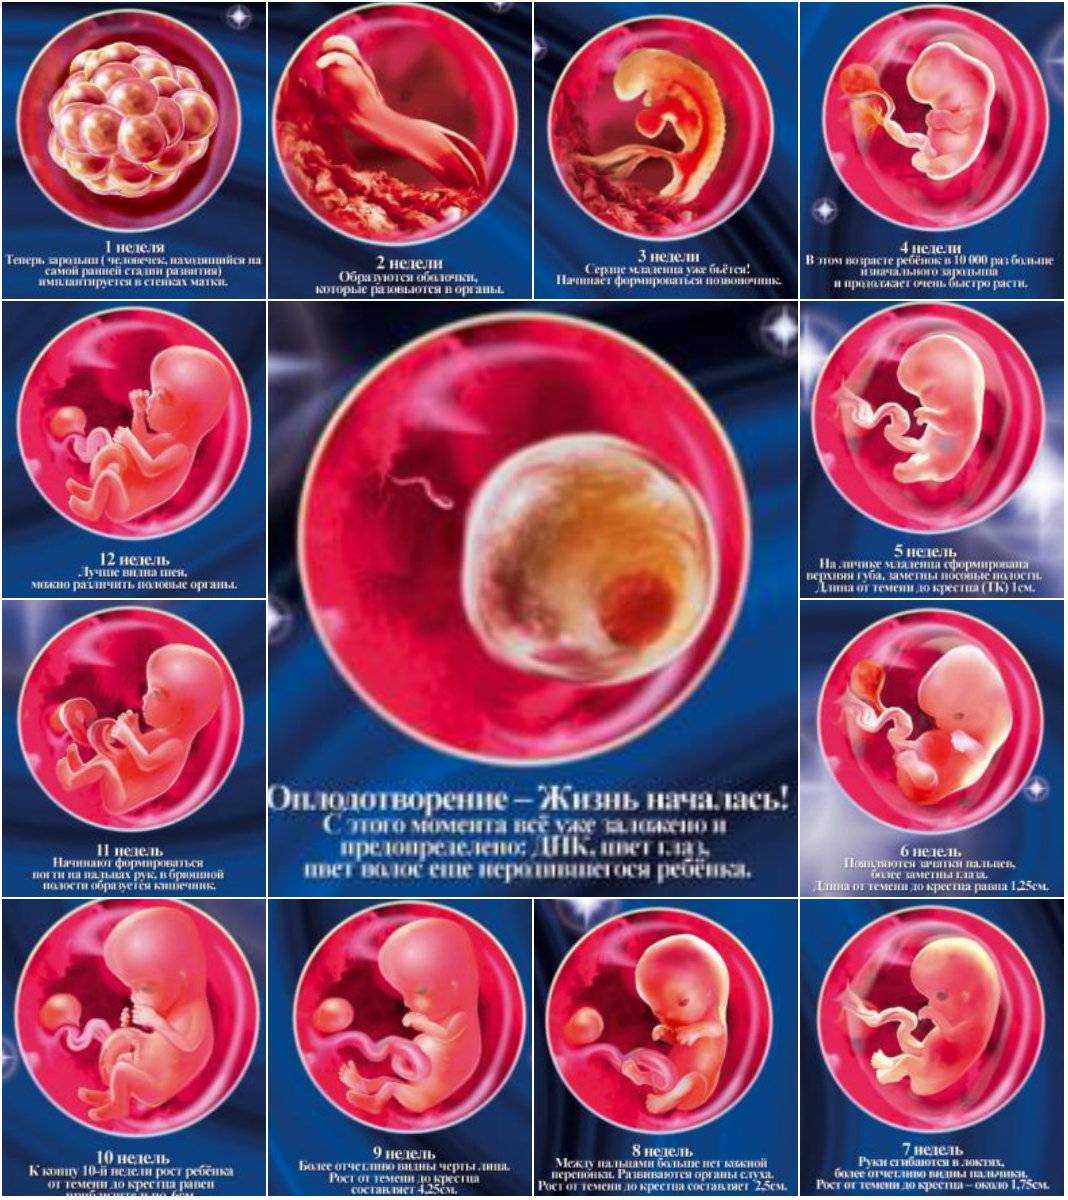 Внутриутробное развитие ребенка по неделям беременности - гбуз "усть-лабинская црб" мз кк